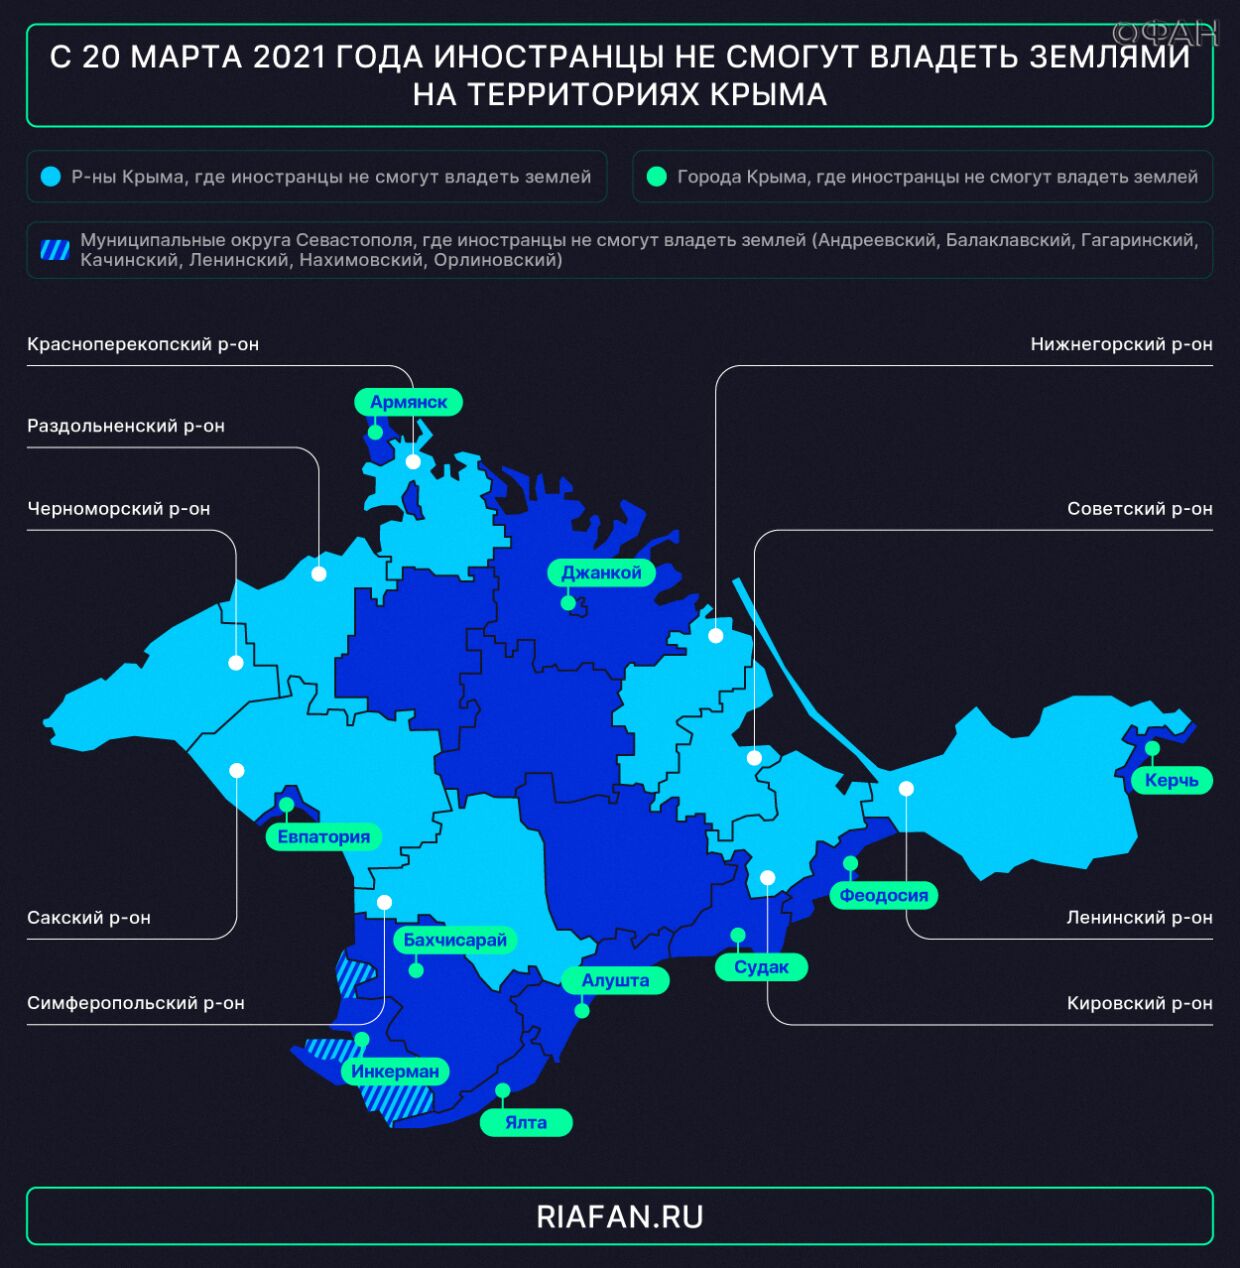 Three months left: Ukrainians will soon begin to seize land in Crimea